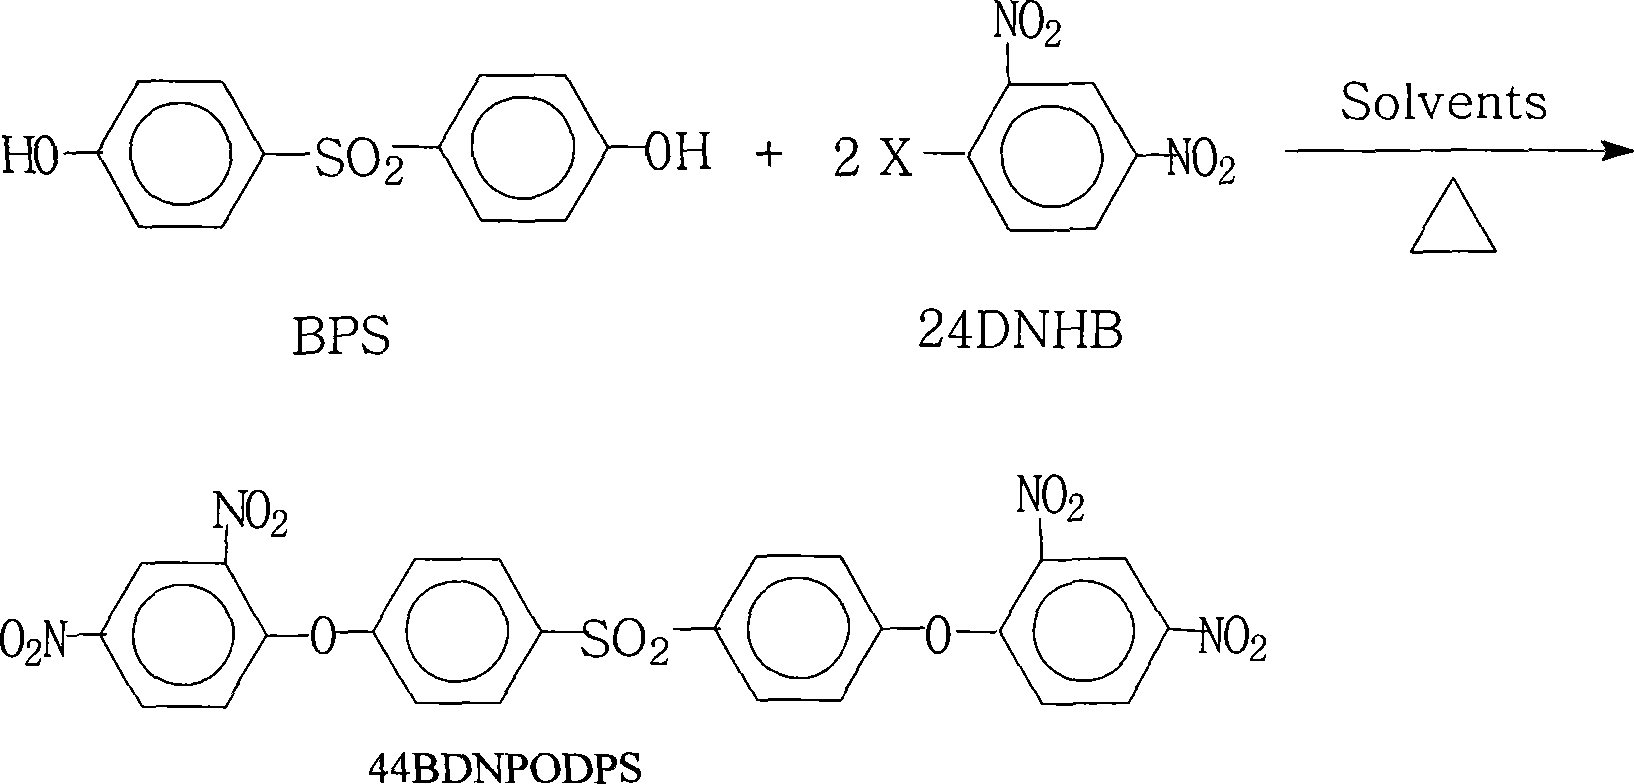 Method for preparing 4,4'-di(2,4-dinitro-phenoxy) sulfone